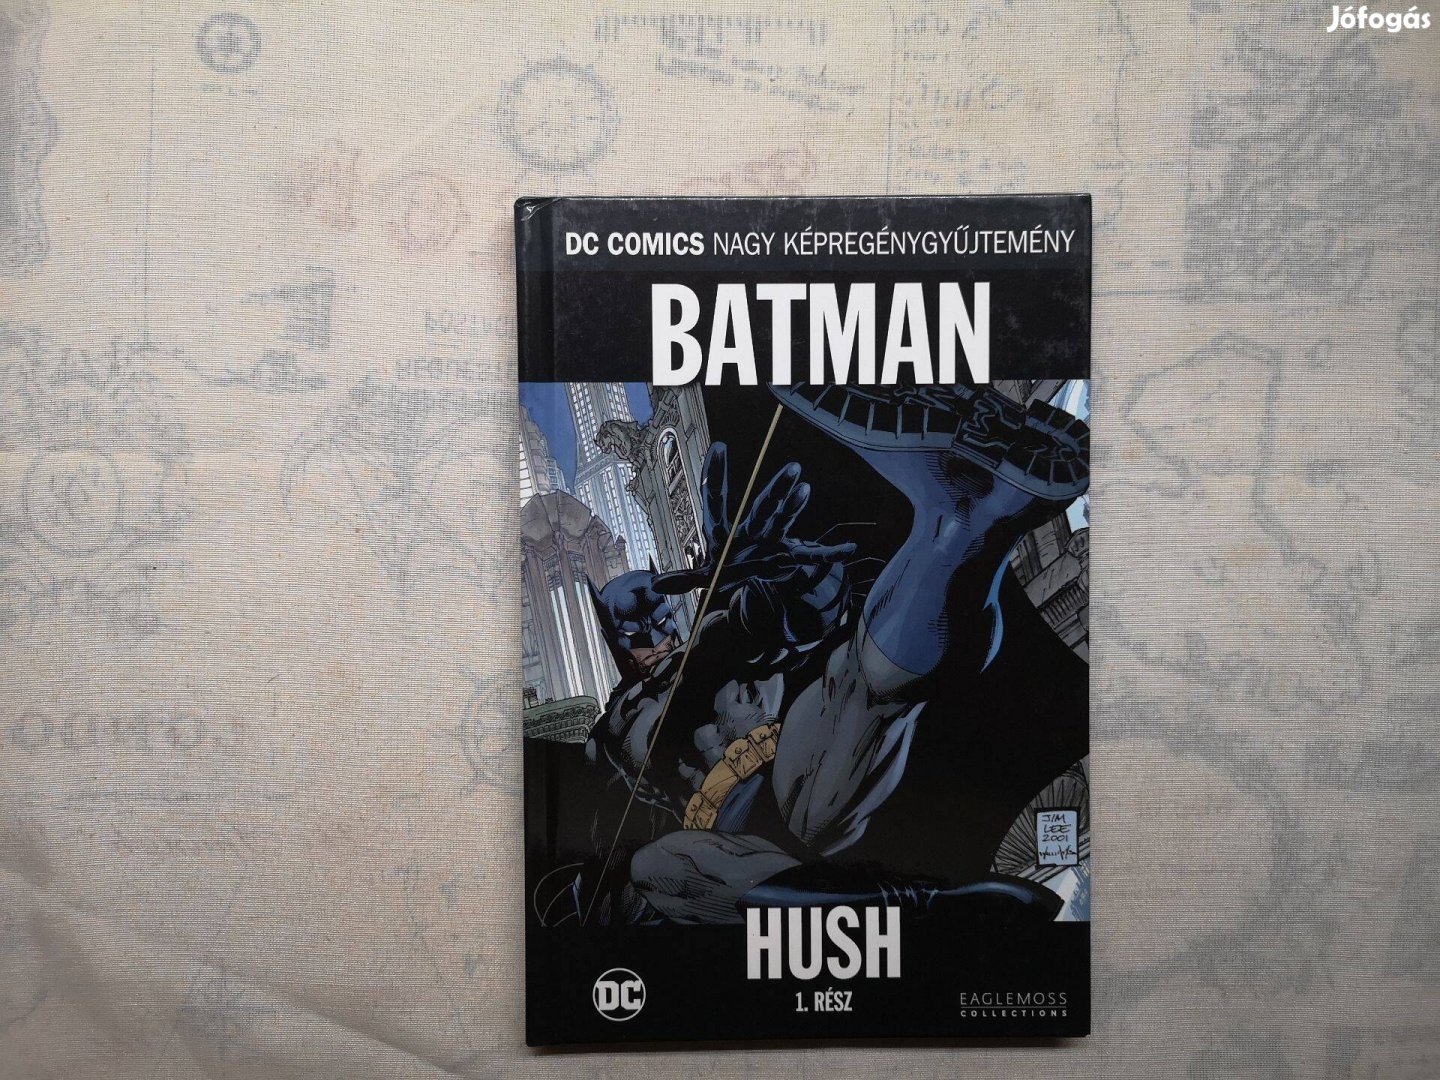 DC Comics Nagy Képregénygyűjtemény 1. - Batman - Hush 1. rész